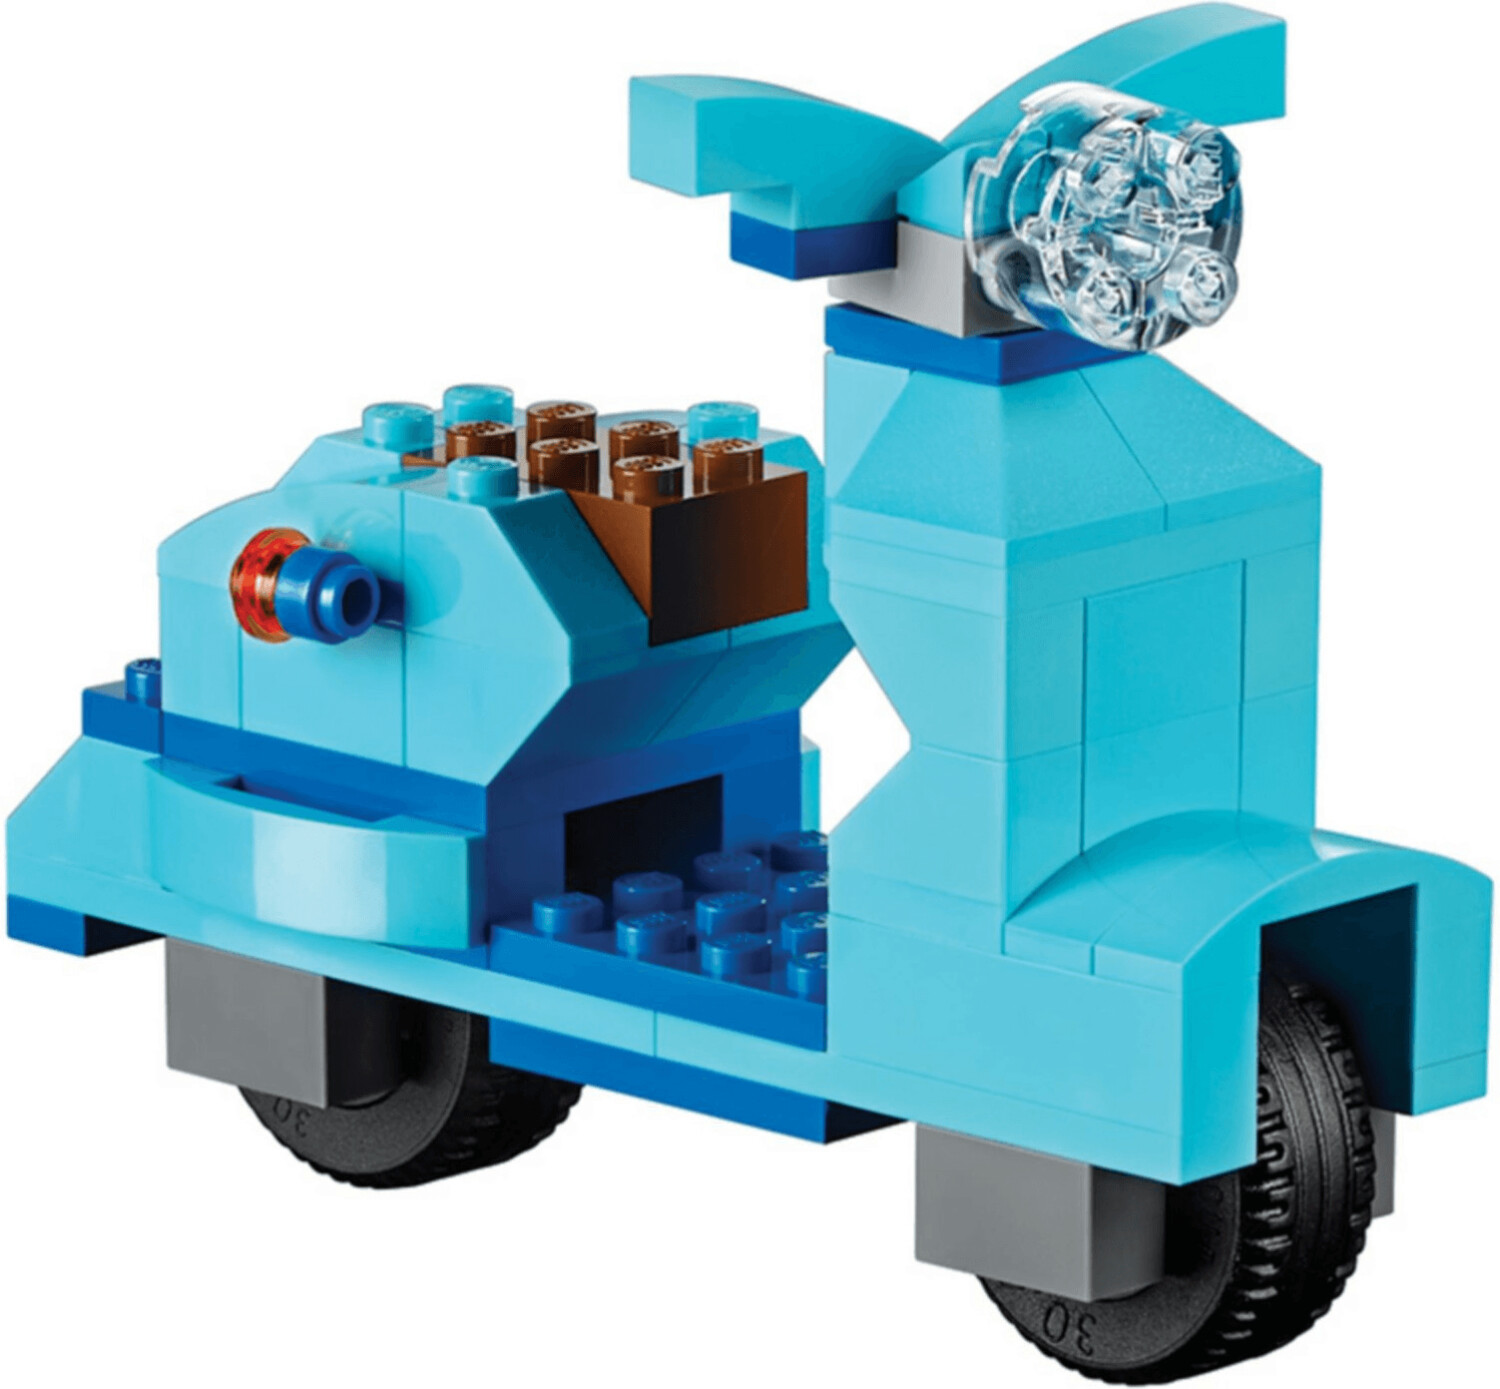 LEGO Classic 10698 - Scatola Mattoncini creativi Grande a € 44,40 (oggi)